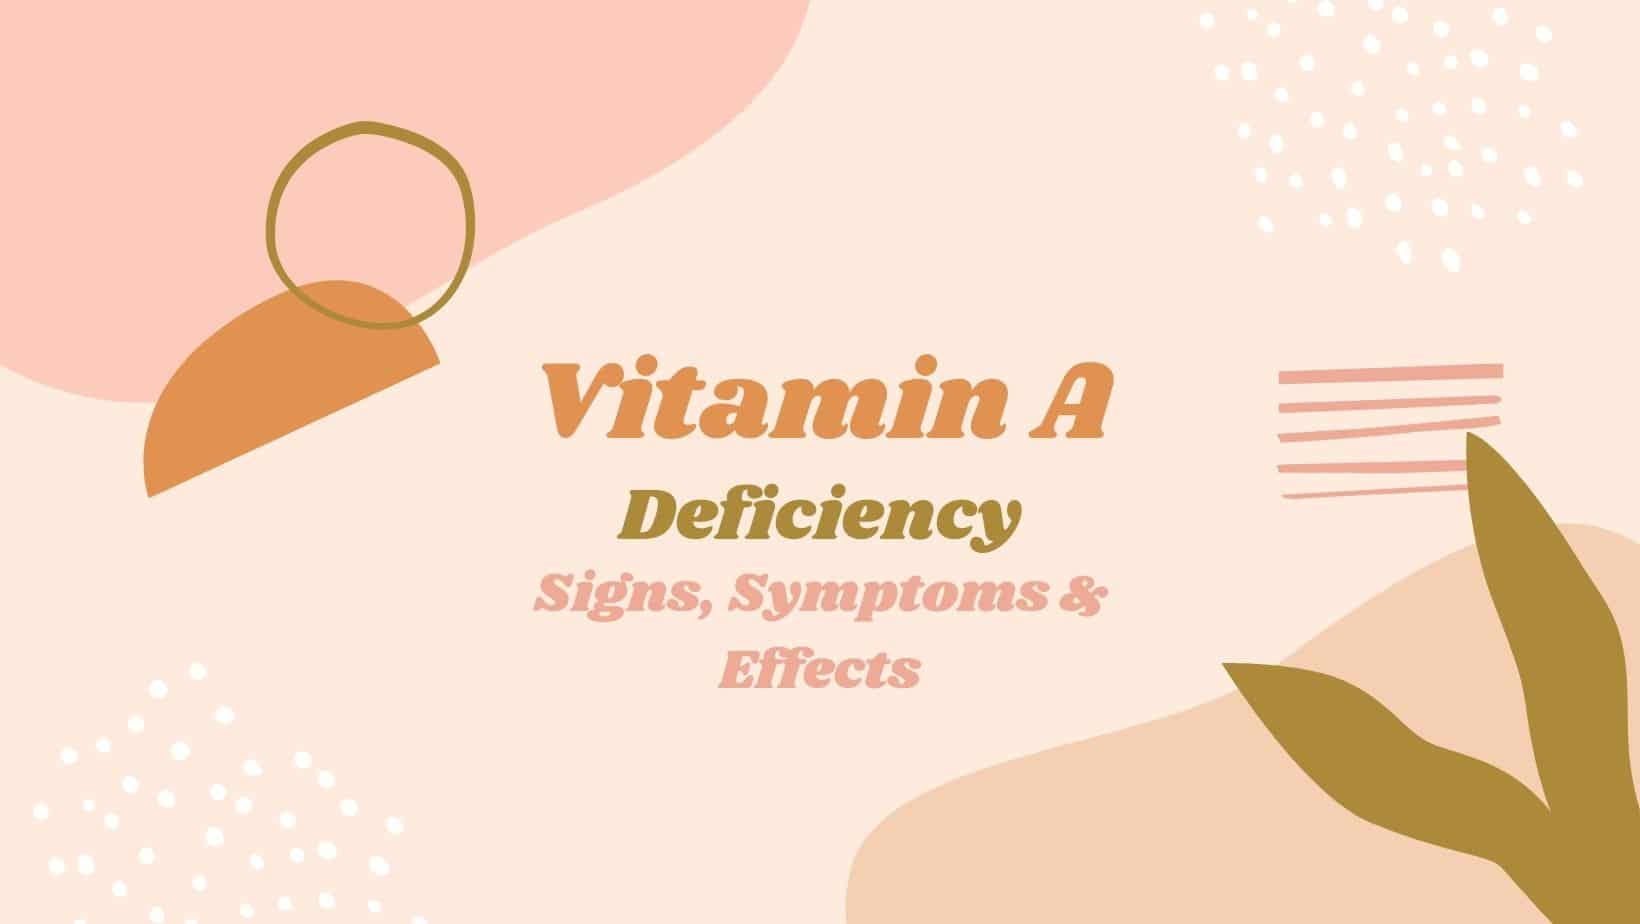 deficiency vitamin a, deficiency of vitamin A, vitamin A deficiency, signs of vitamin A deficience